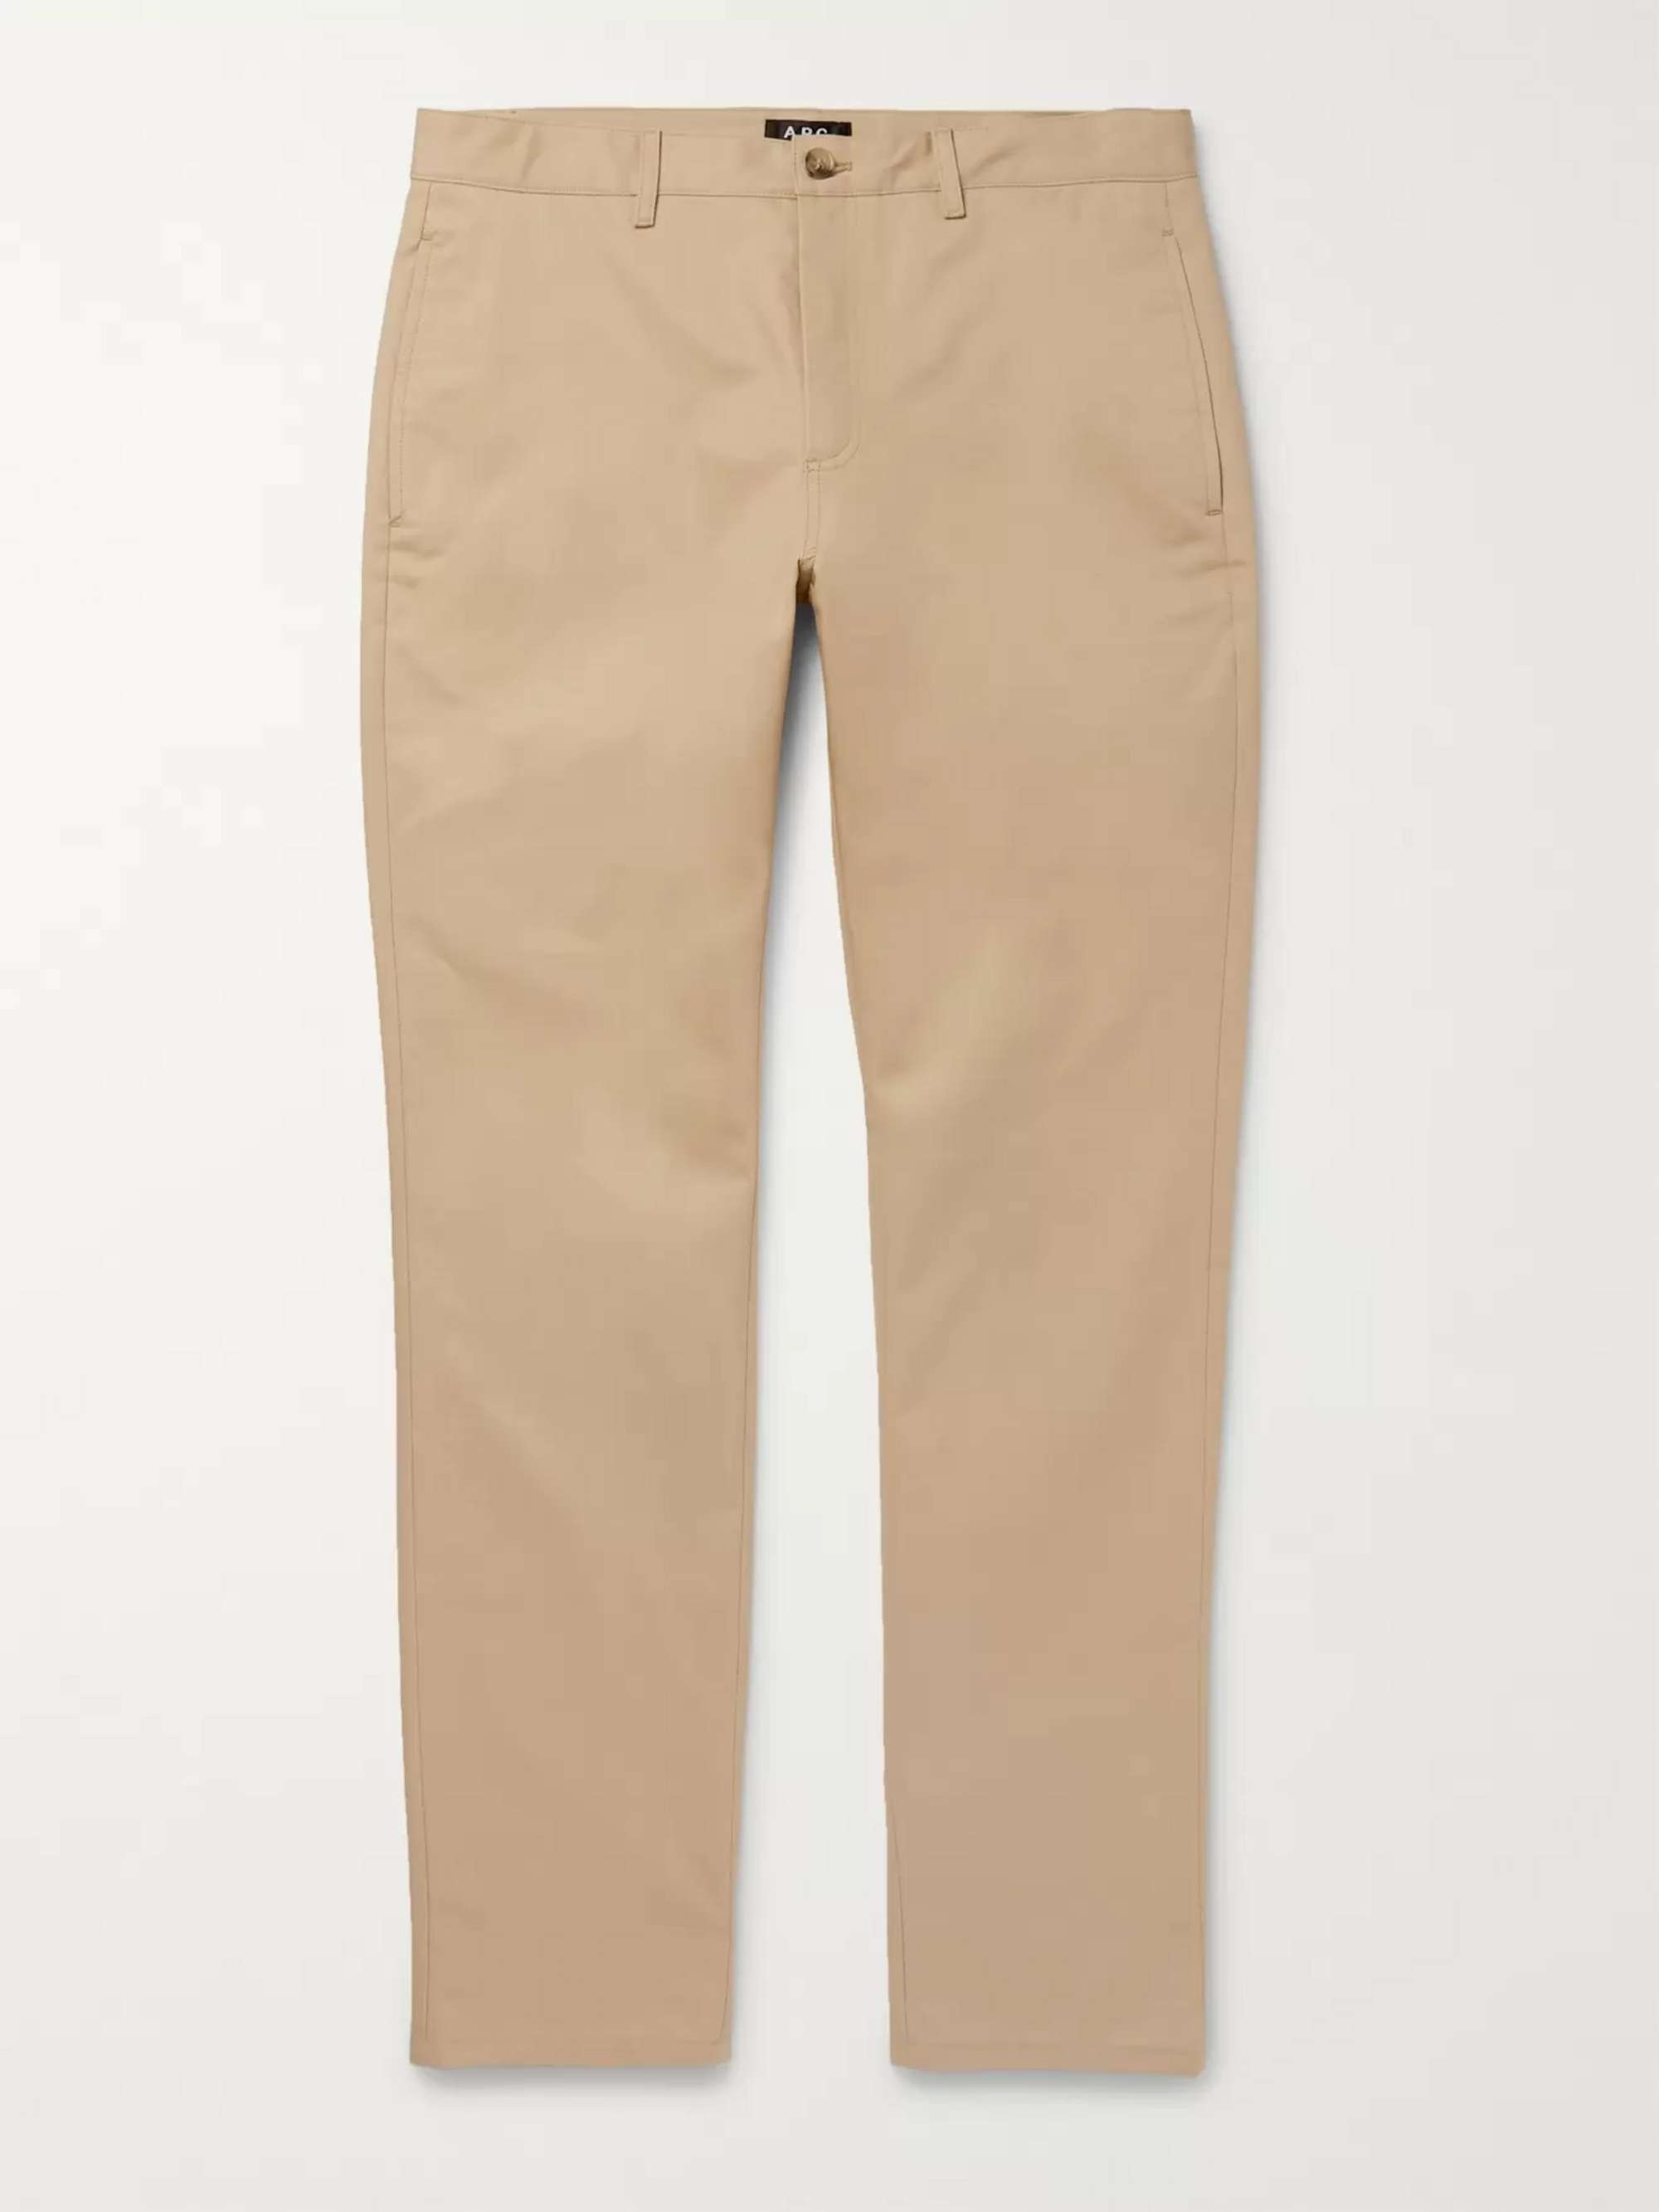 Men's Carrot pants in cotton gabardine